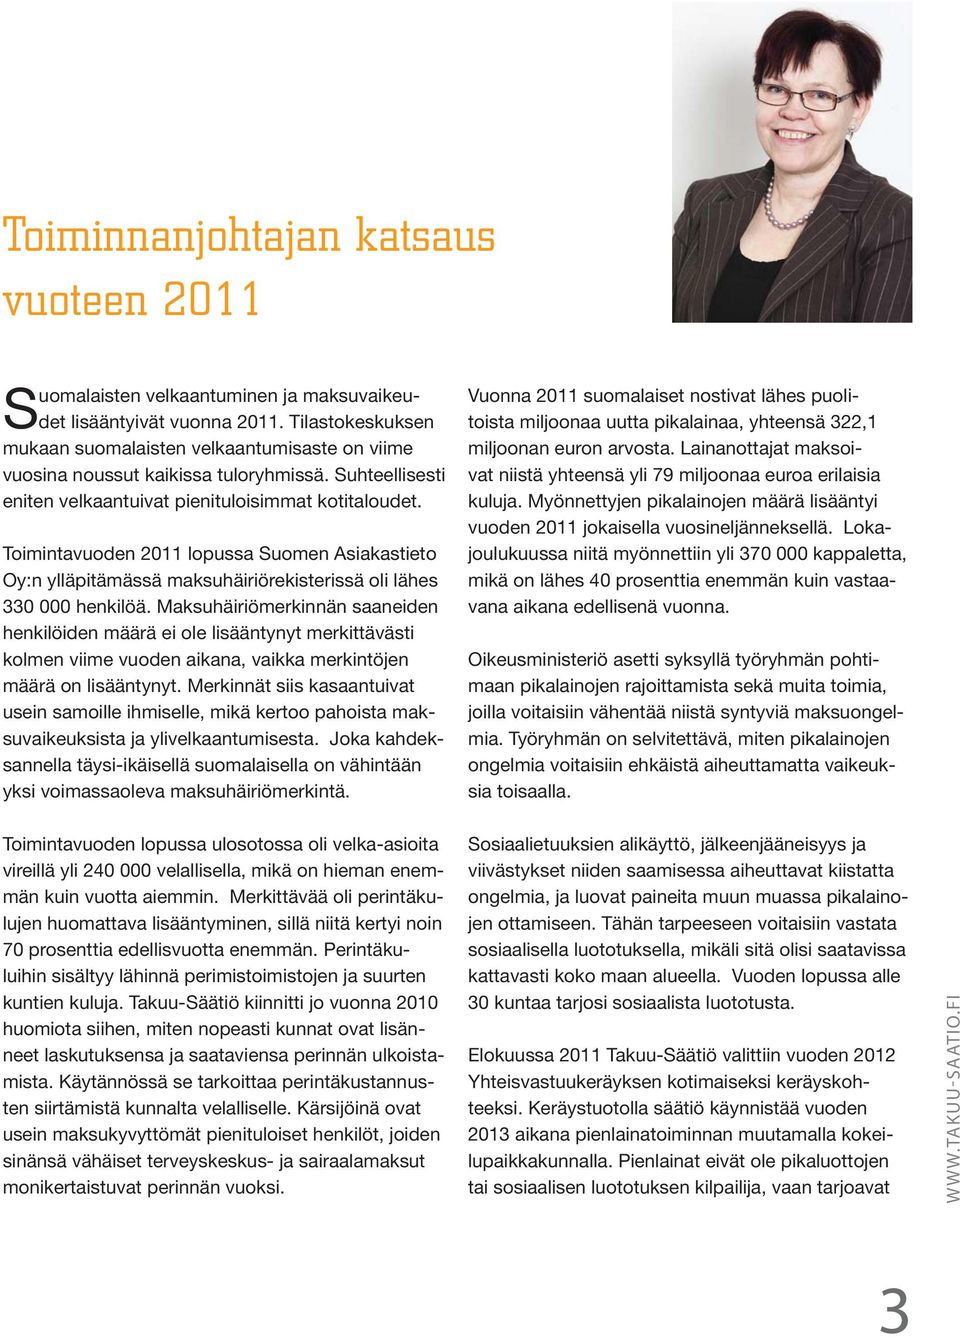 Toimintavuoden 2011 lopussa Suomen Asiakastieto Oy:n ylläpitämässä maksuhäiriörekisterissä oli lähes 330 000 henkilöä.